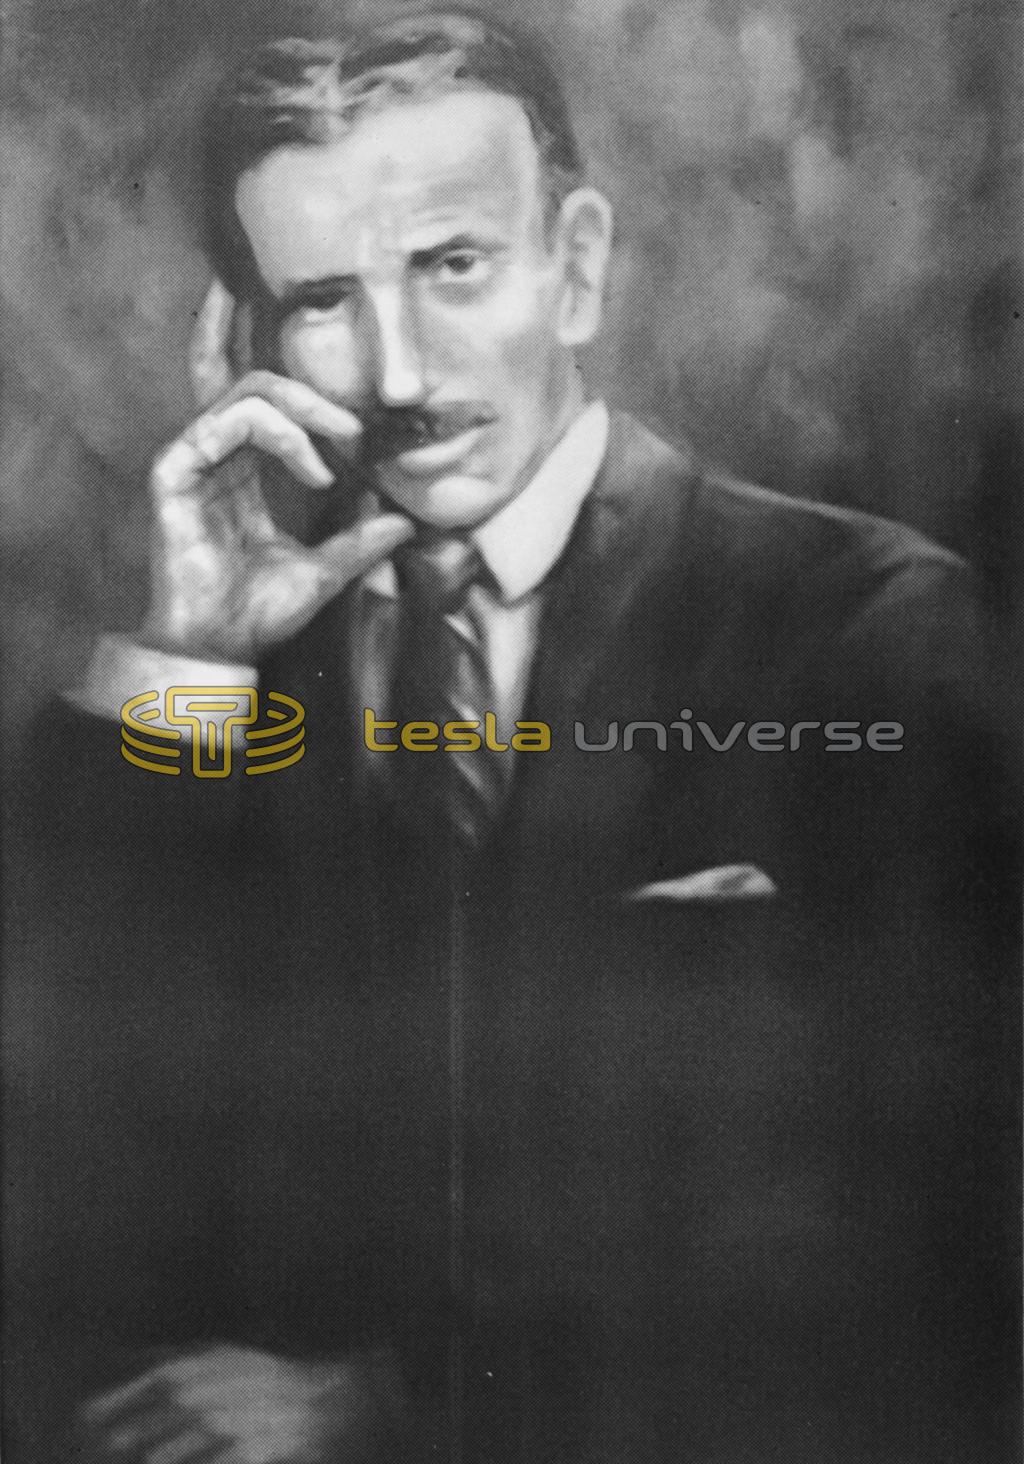 Painting of Nikola Tesla by Wesley Berrier.